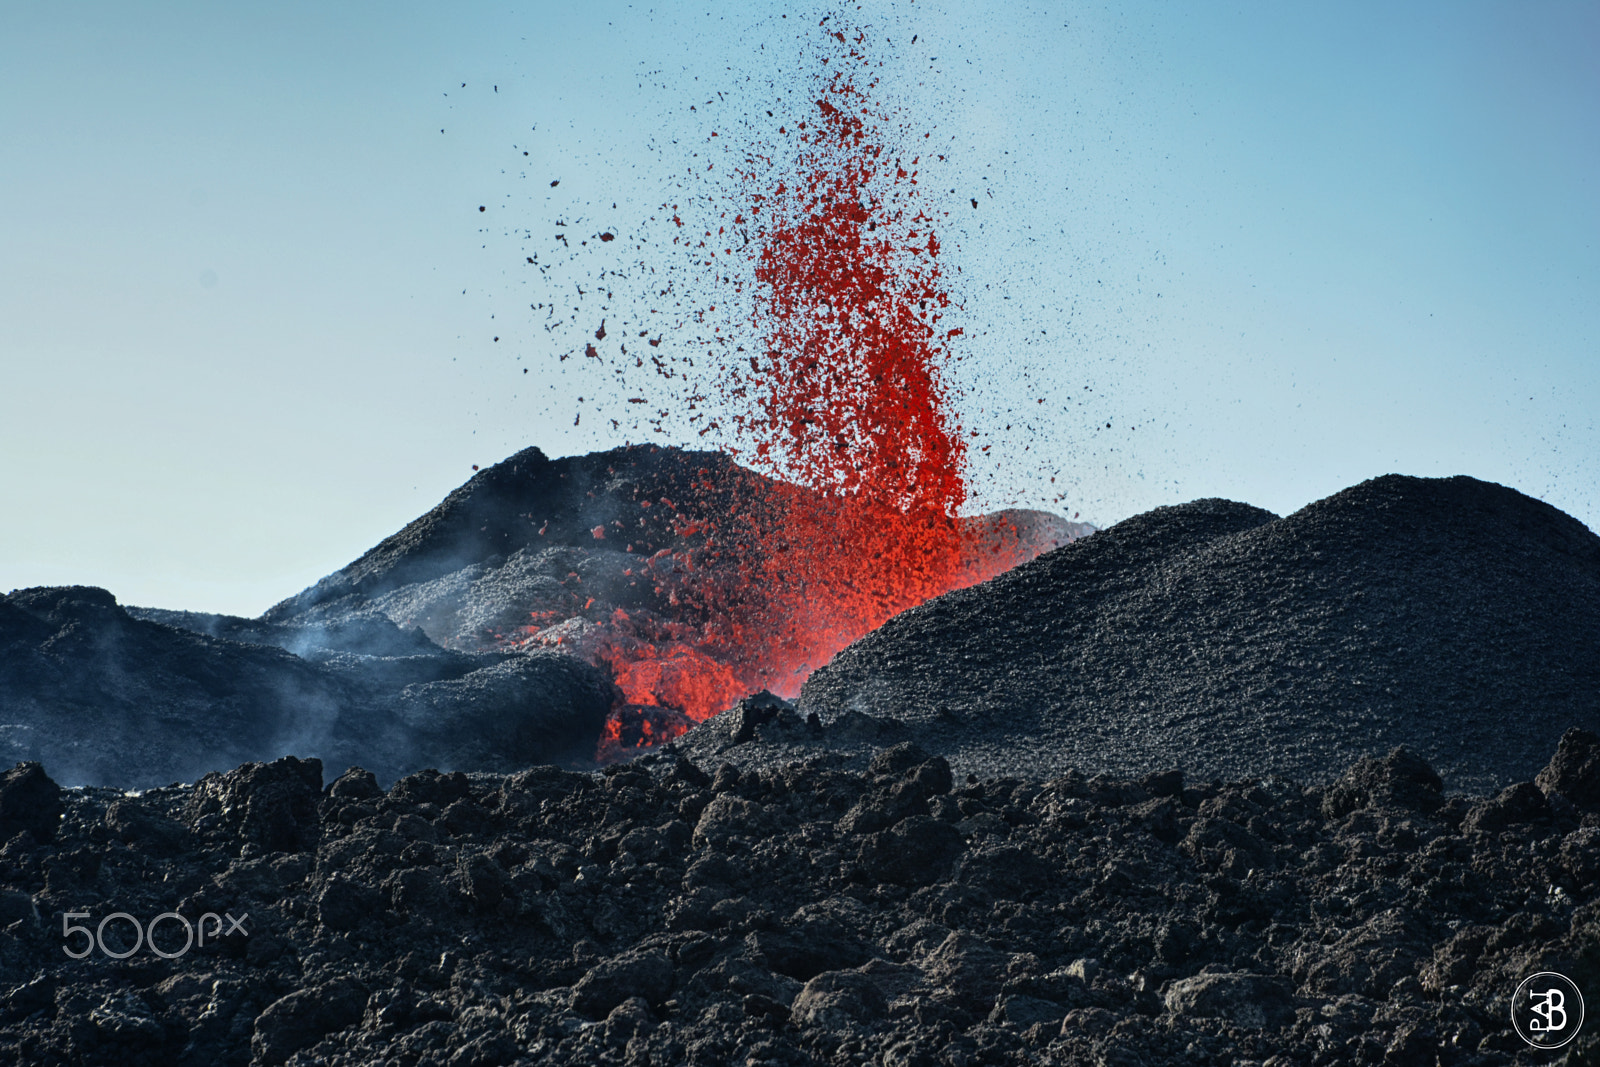 AF Zoom-Nikkor 75-240mm f/4.5-5.6D sample photo. Volcanic eruption piton de la fournaise 6-09/2016 photography